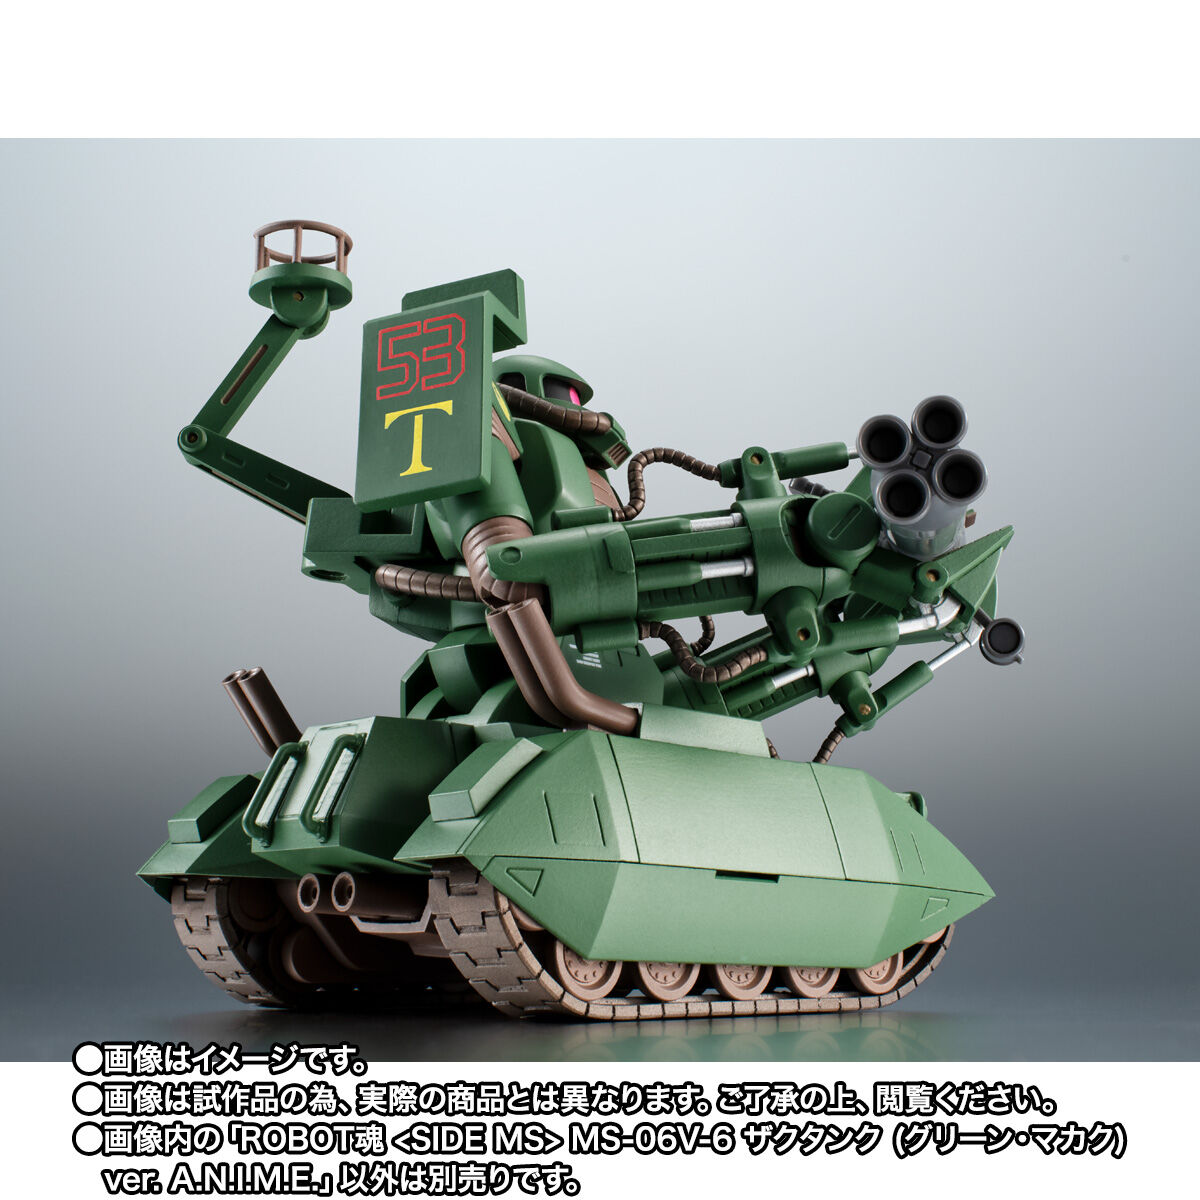 機動戦士ガンダム「ROBOT魂 ＜SIDE MS＞ MS-06V-6 ザクタンク （グリーン・マカク） ver. A.N.I.M.E.」のフィギュア画像